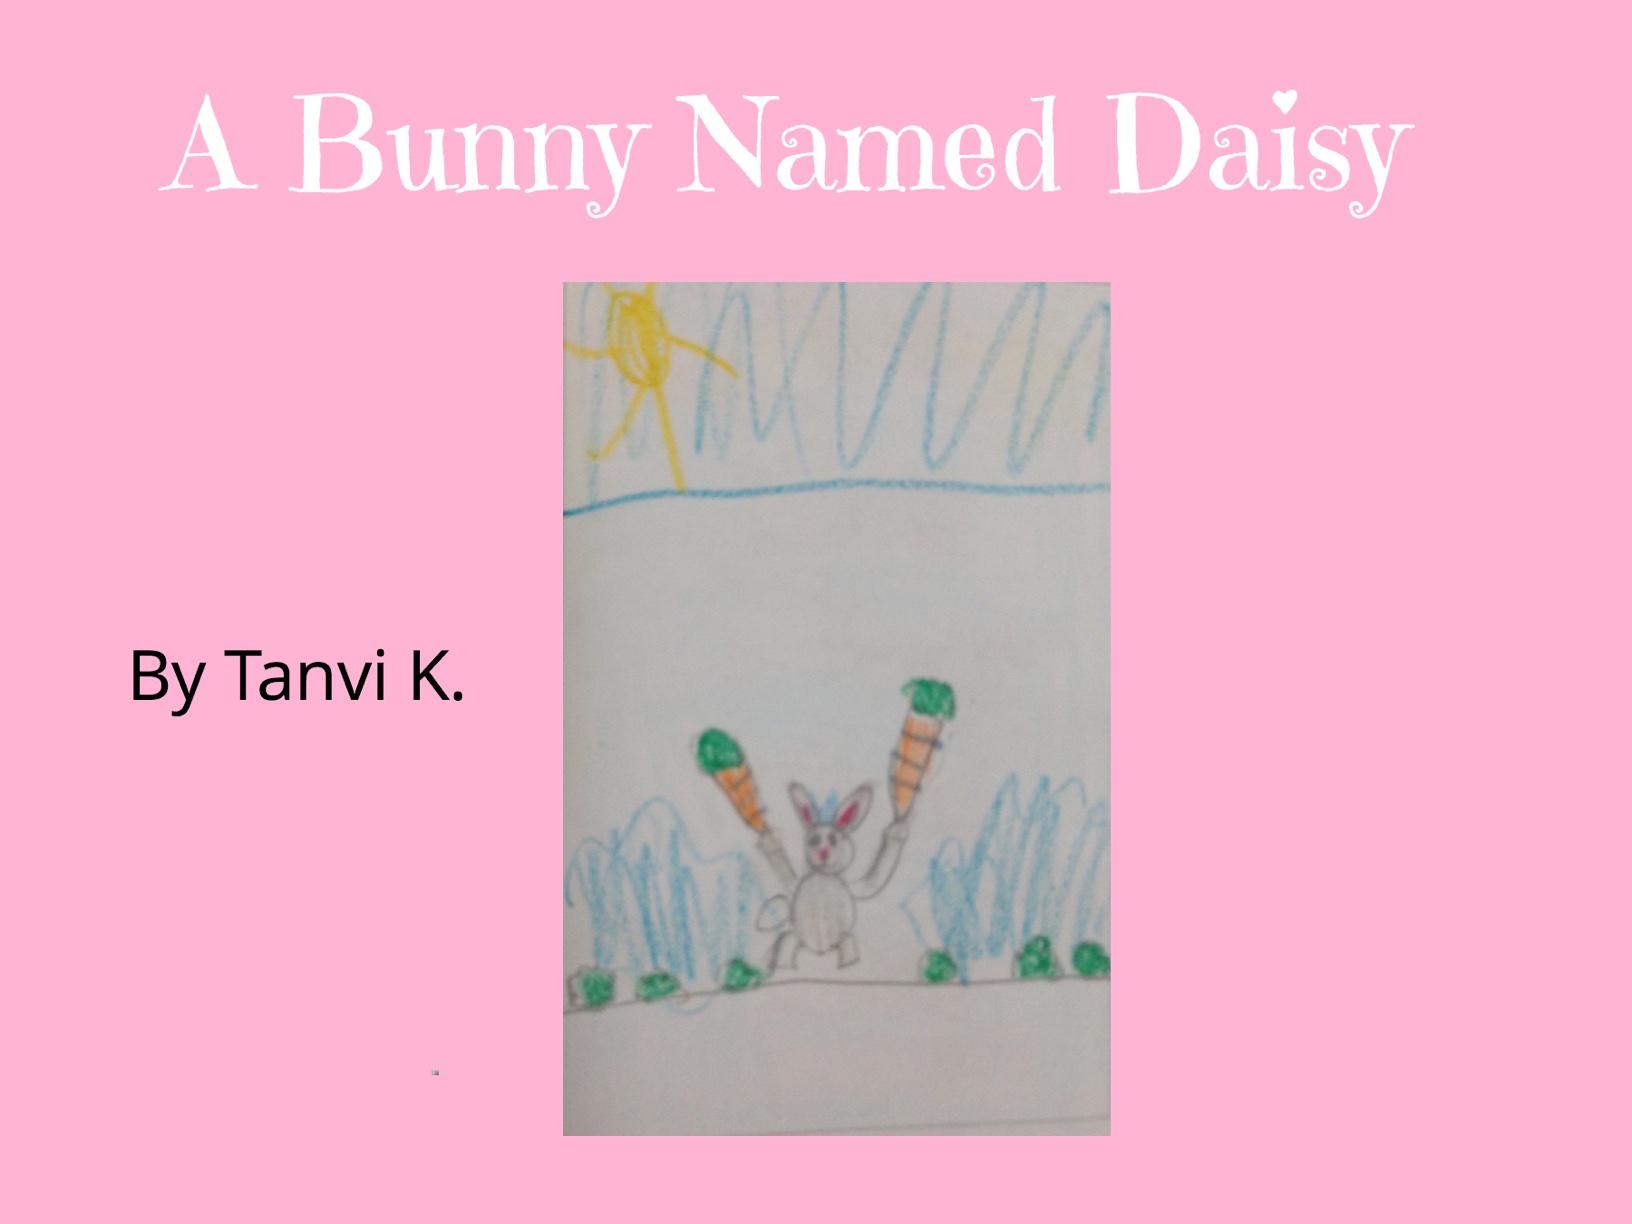 Daisy the Bunny by Tanvi K